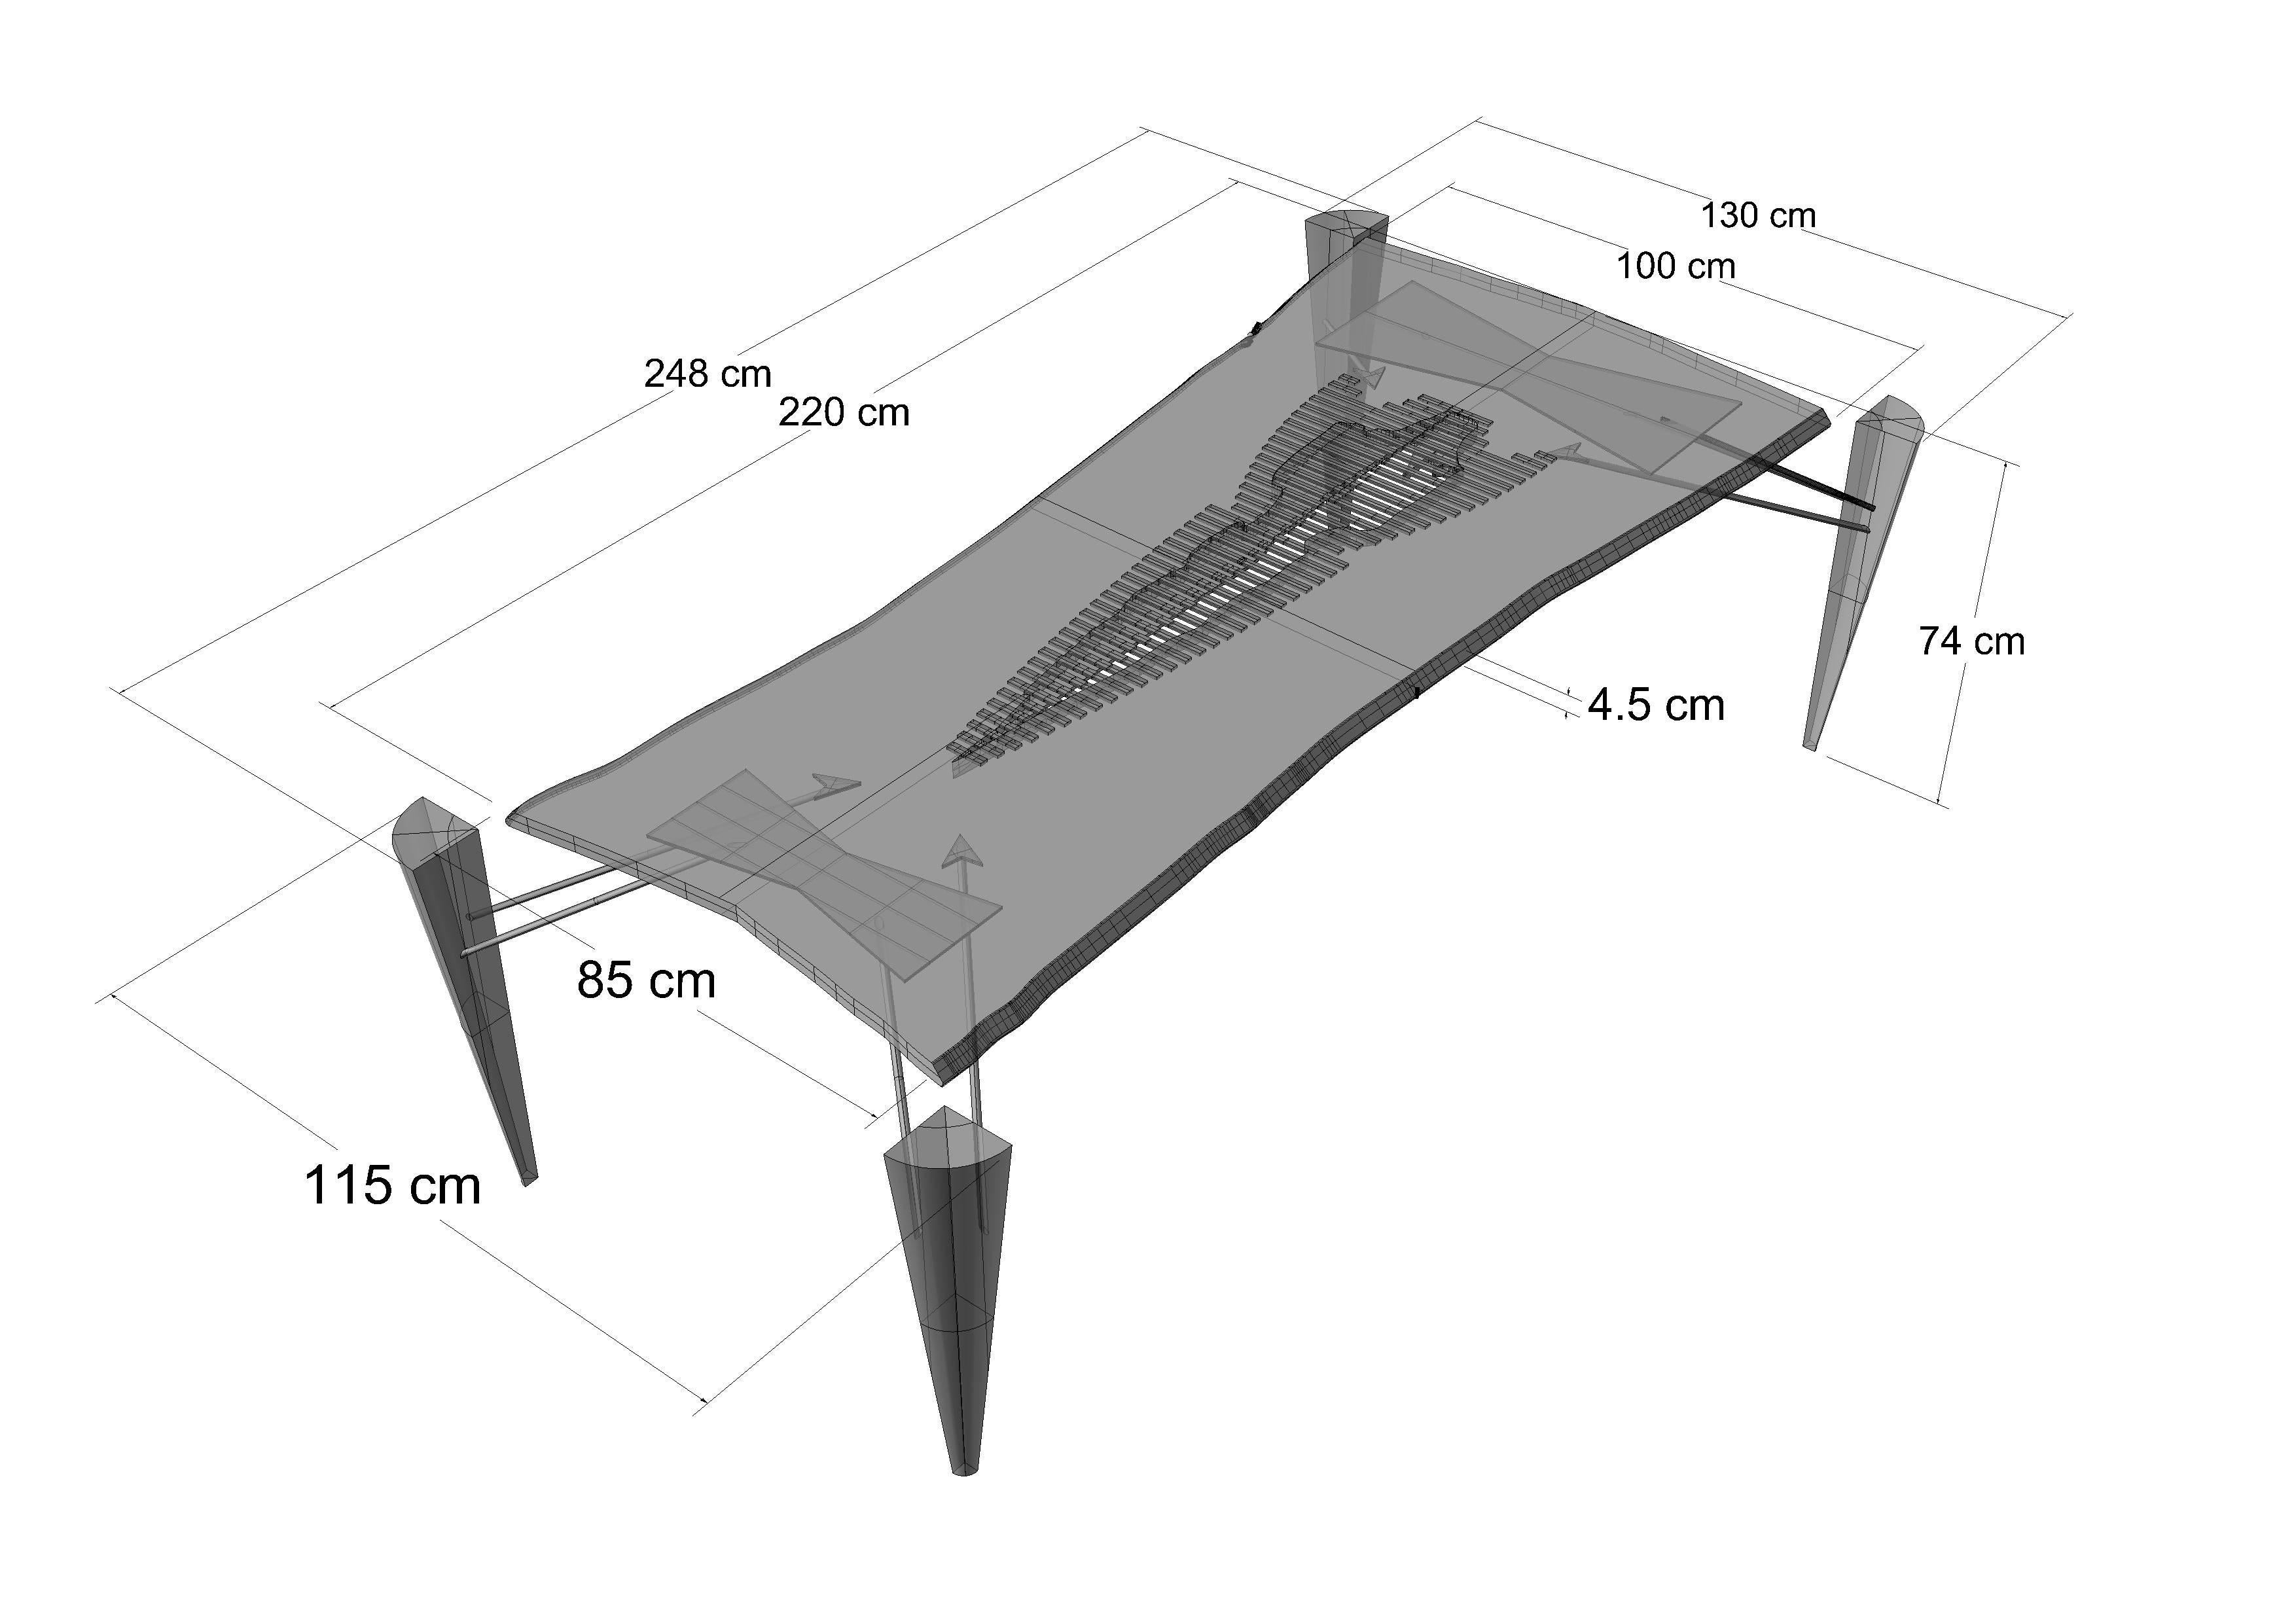 Rocket Table, Stamped: R  2015  Signed: Helgen Design 2